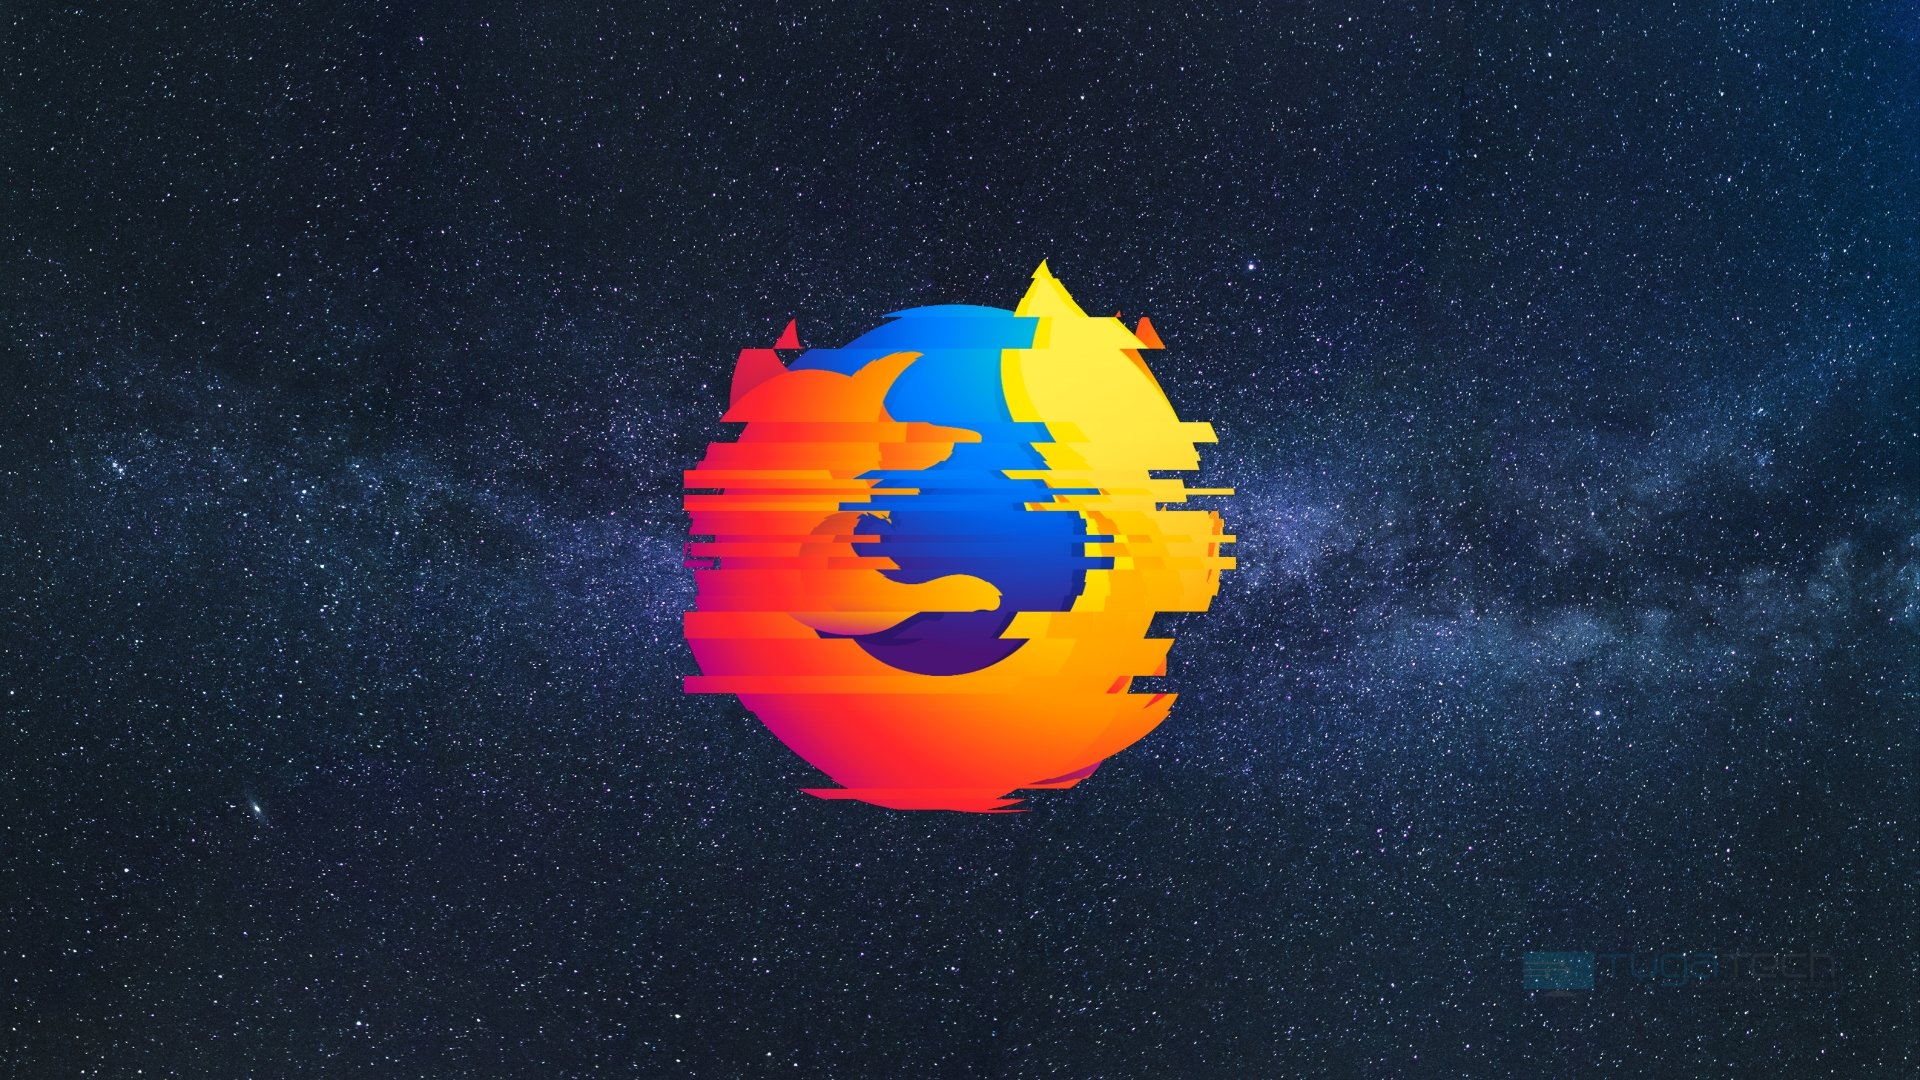 Firefox 100